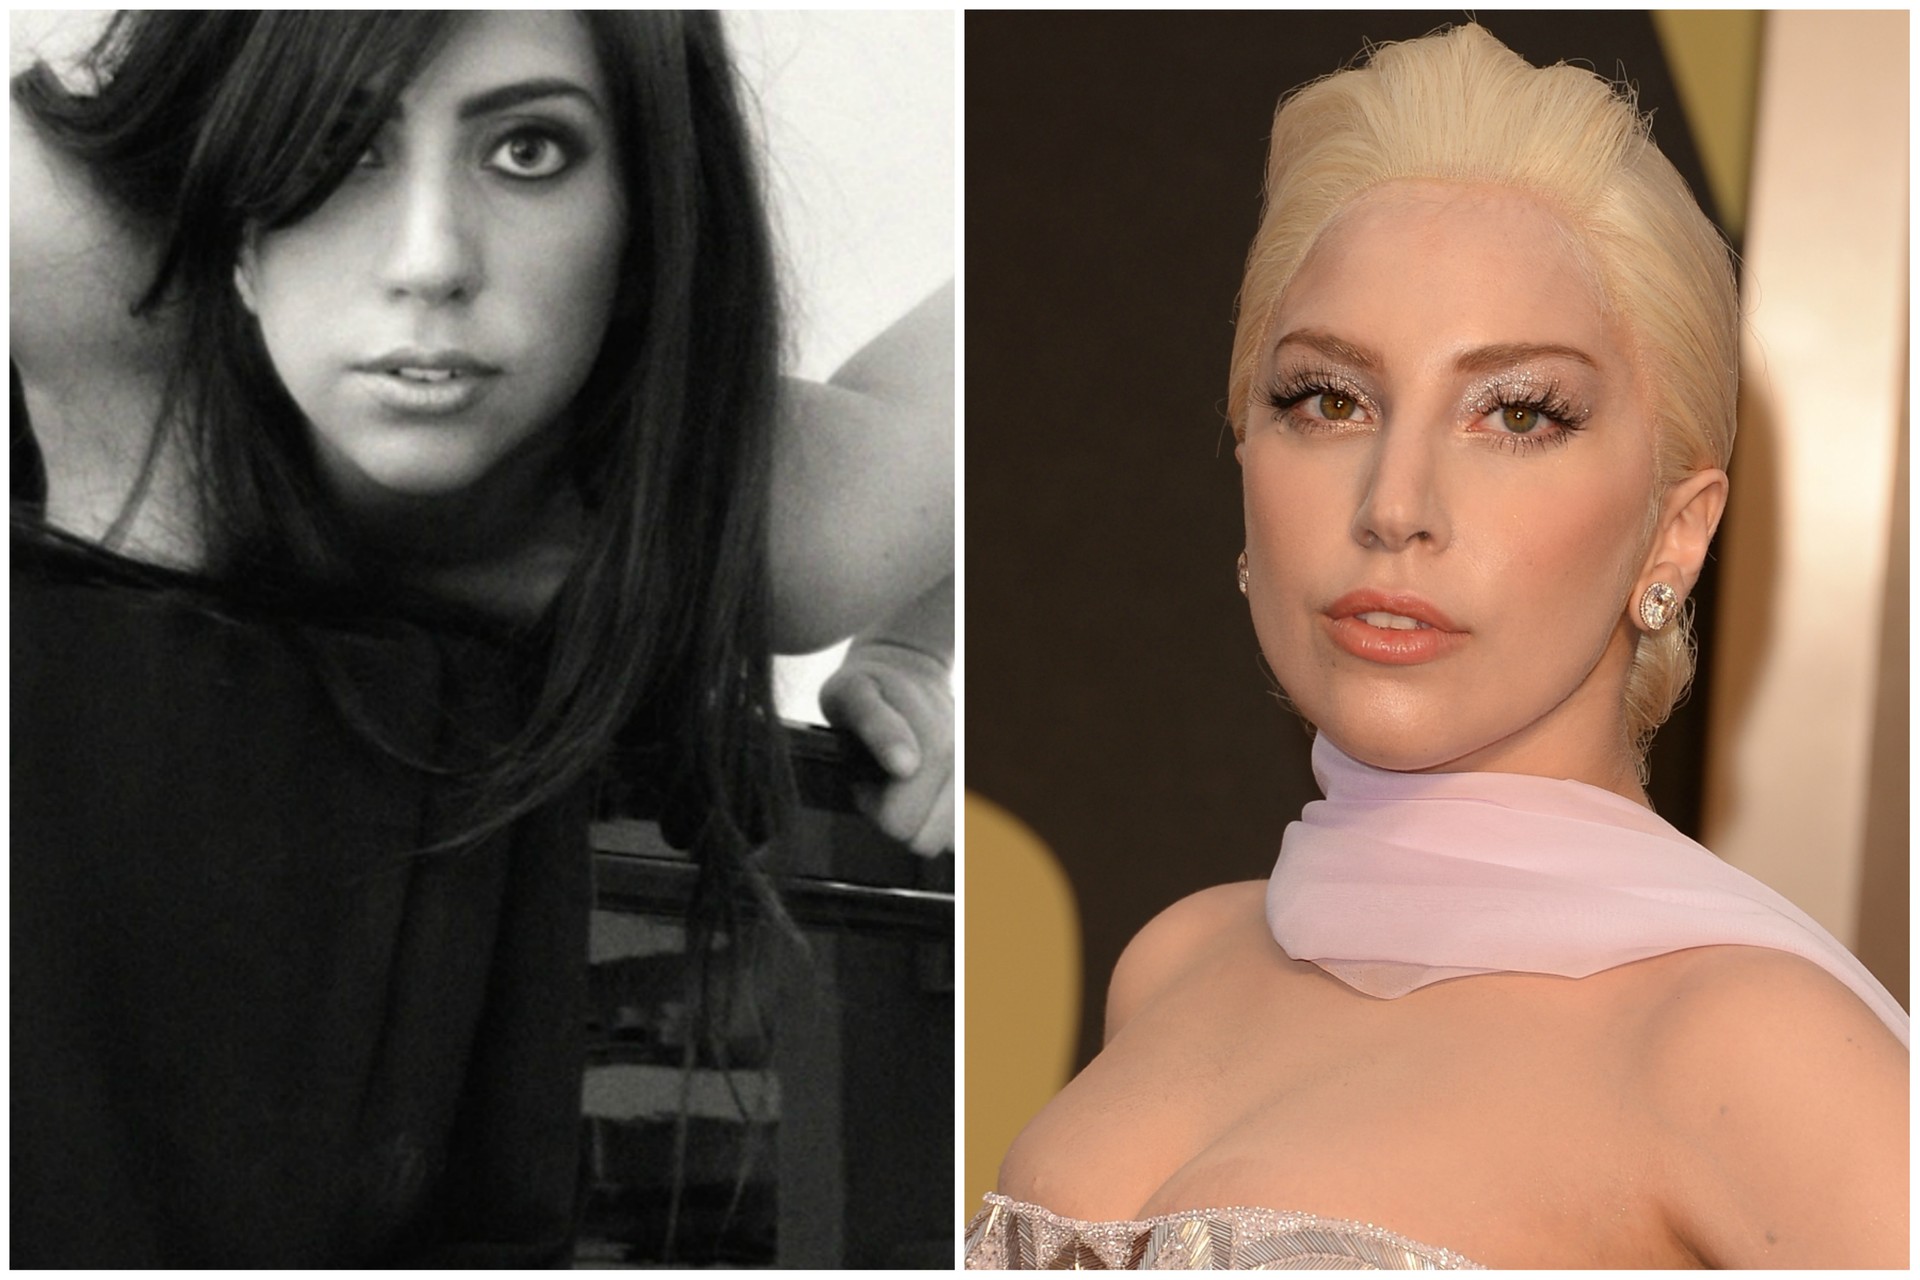 Lady Gaga praticamente reencarnou: lembra muito pouco a garota que era antes da fama. (Foto: Getty Images)